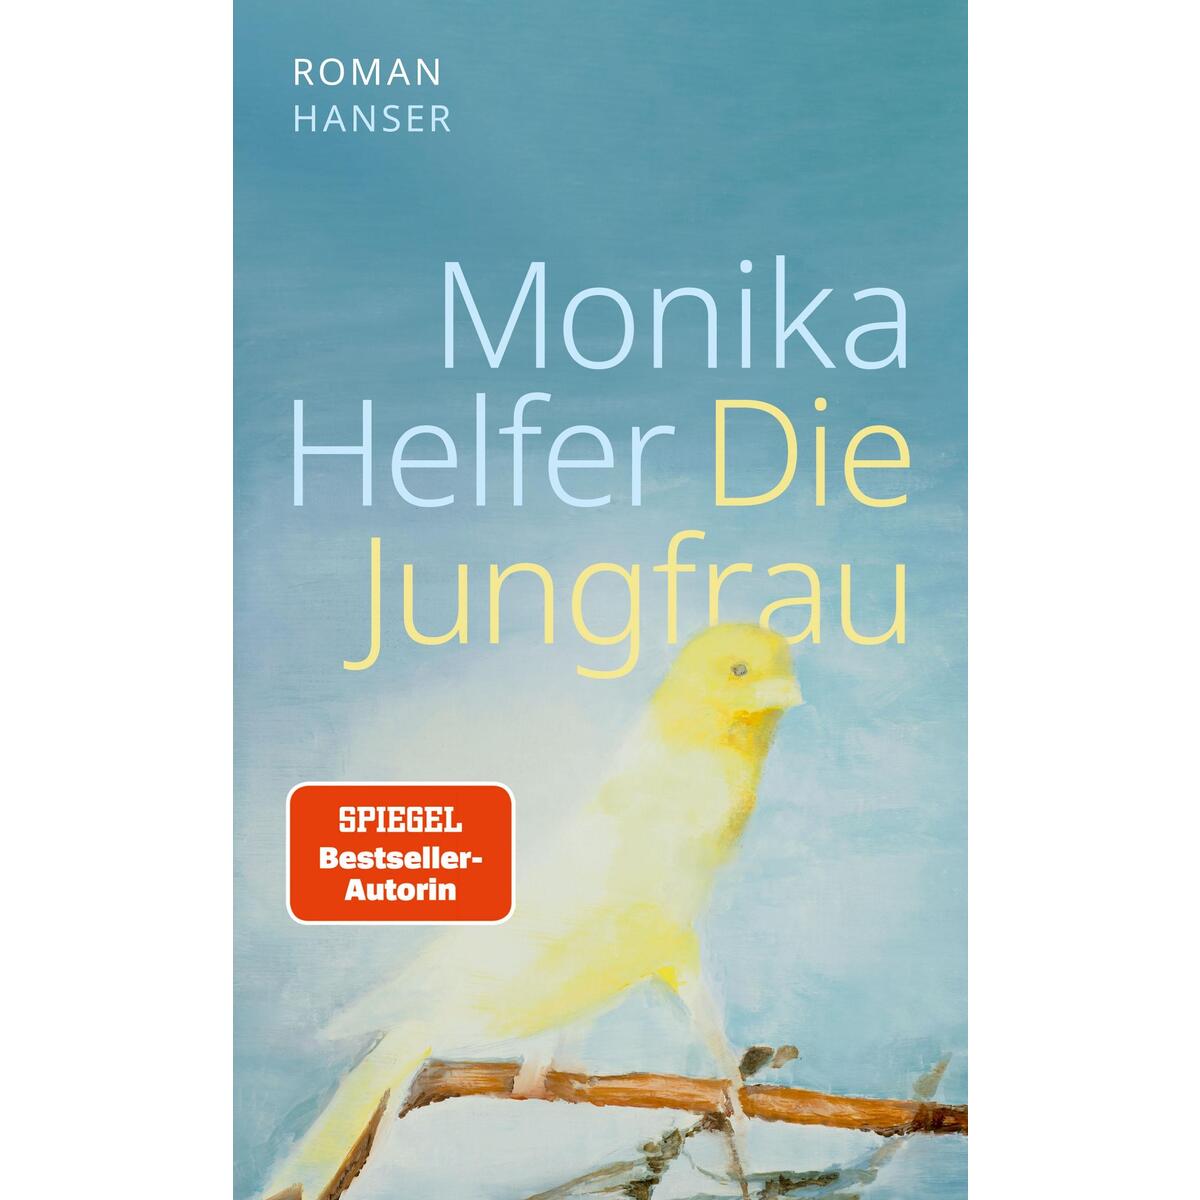 Die Jungfrau von Carl Hanser Verlag